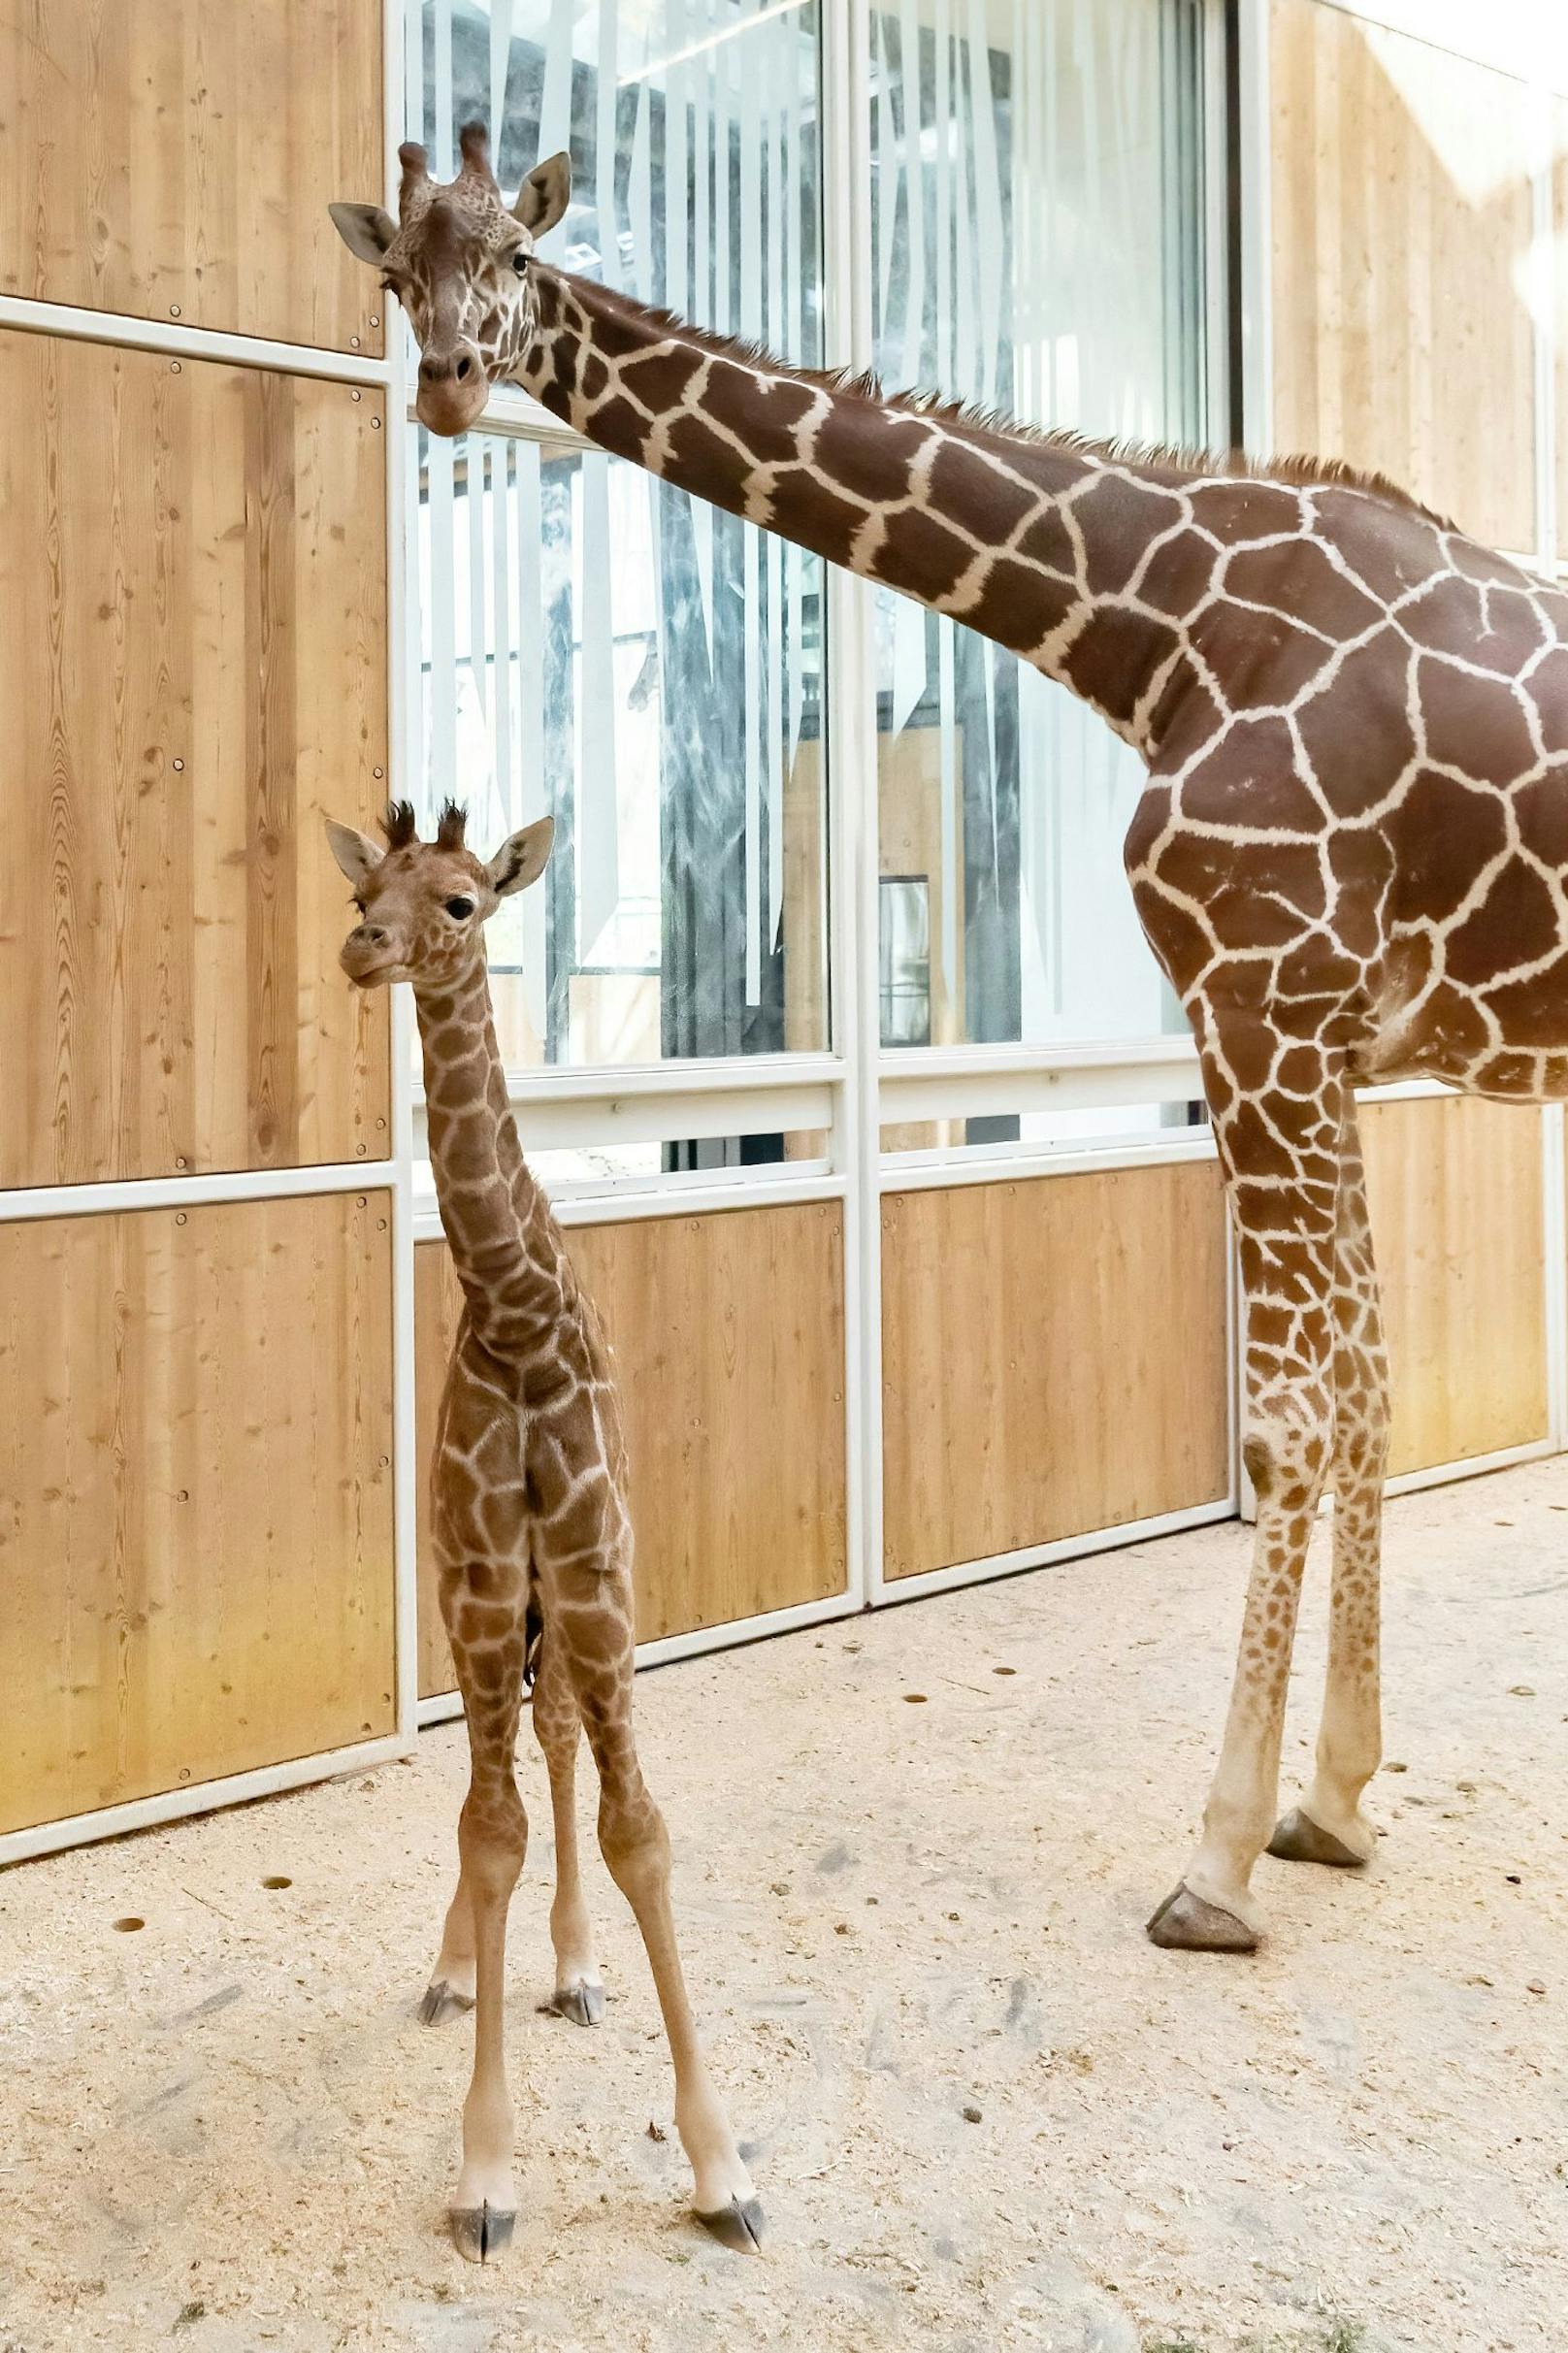 Die kleine Giraffe hört nun auf den Namen "Amari" - dies kommt aus der afrikanischen Sprache Yoruba und bedeutet: "Die Starke". 